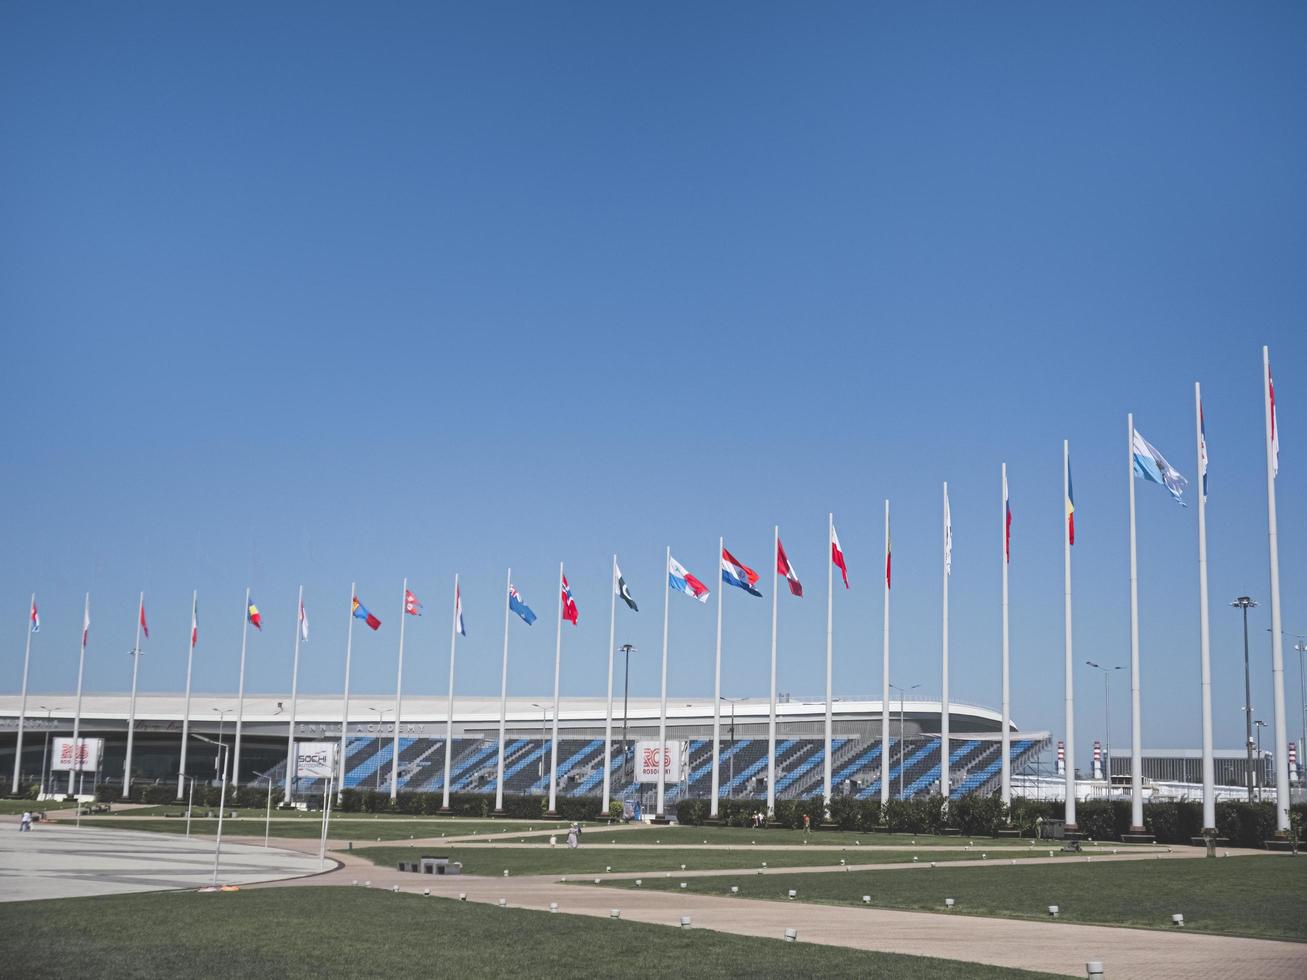 ville d'adler, russie - août 2019, drapeaux des pays du monde sur des mâts de drapeau dans le parc olympique photo